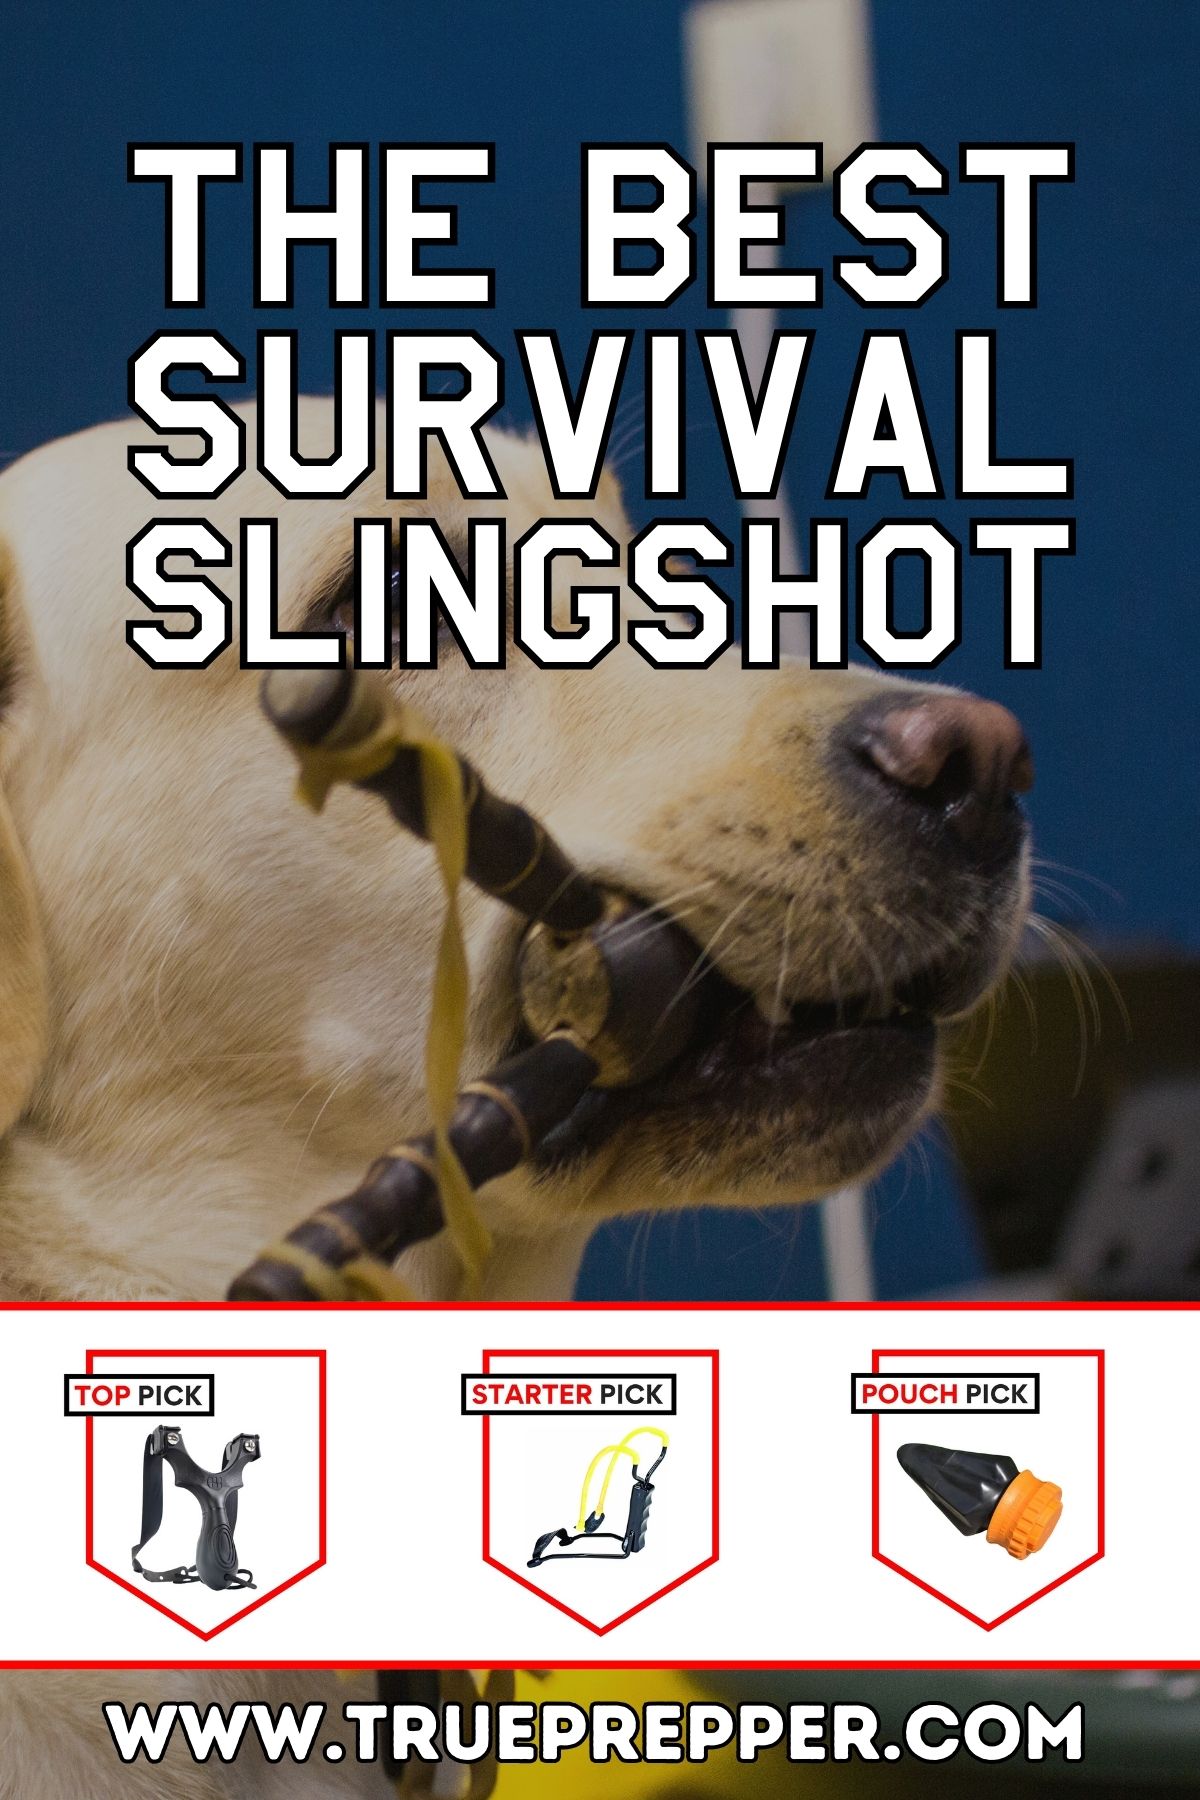 The Best Survival Slingshot